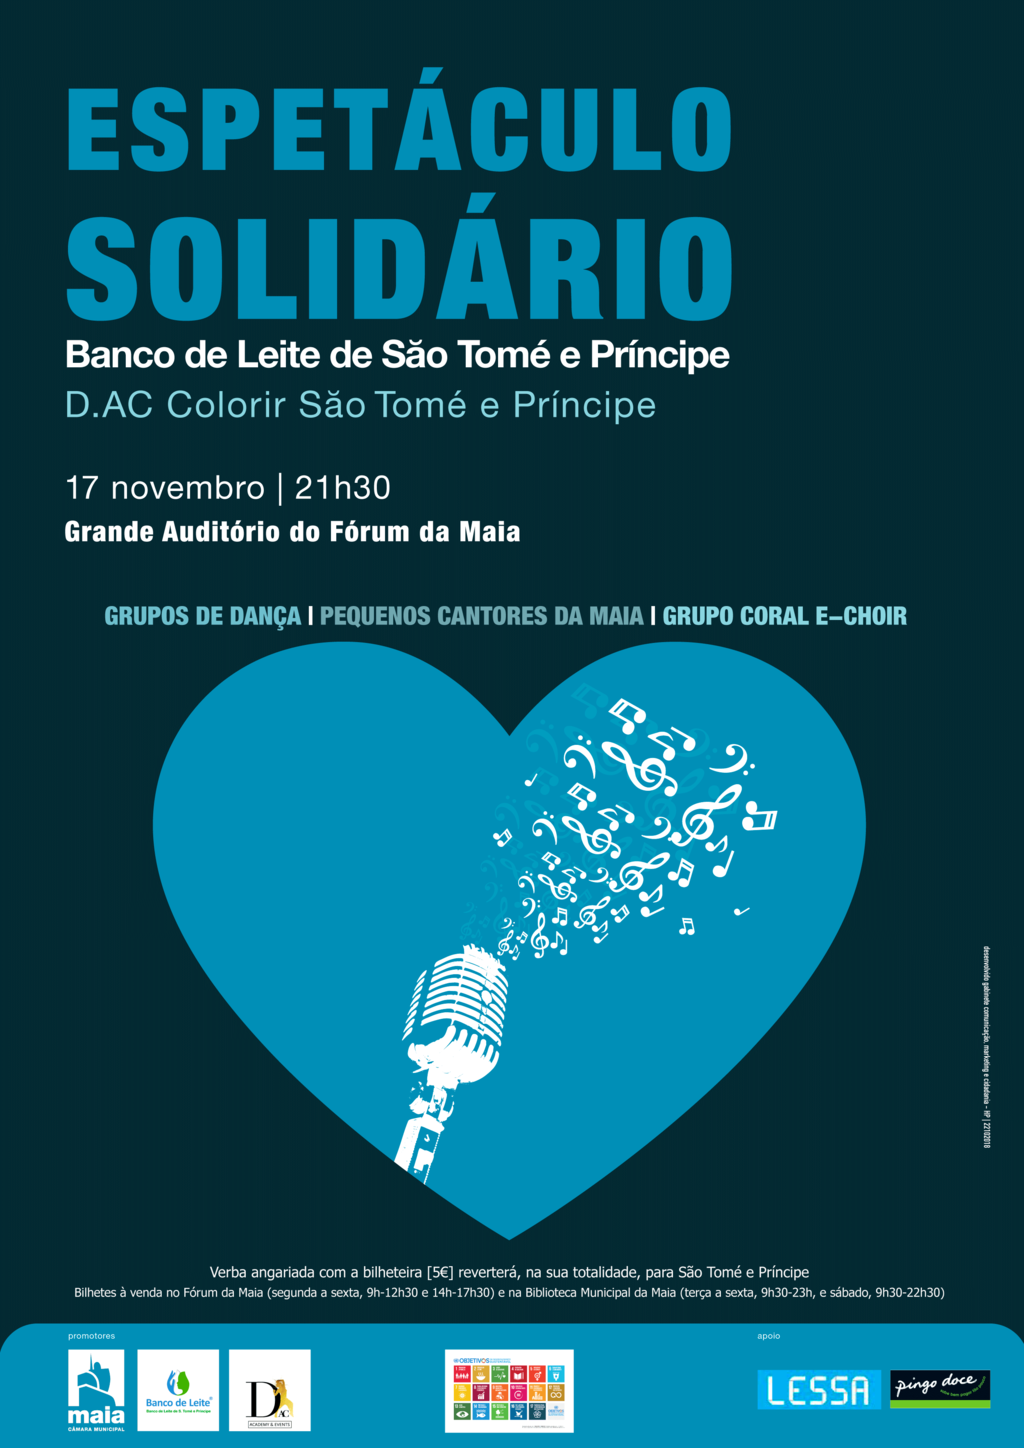 Espetáculo Solidário a favor de São Tomé e Príncipe